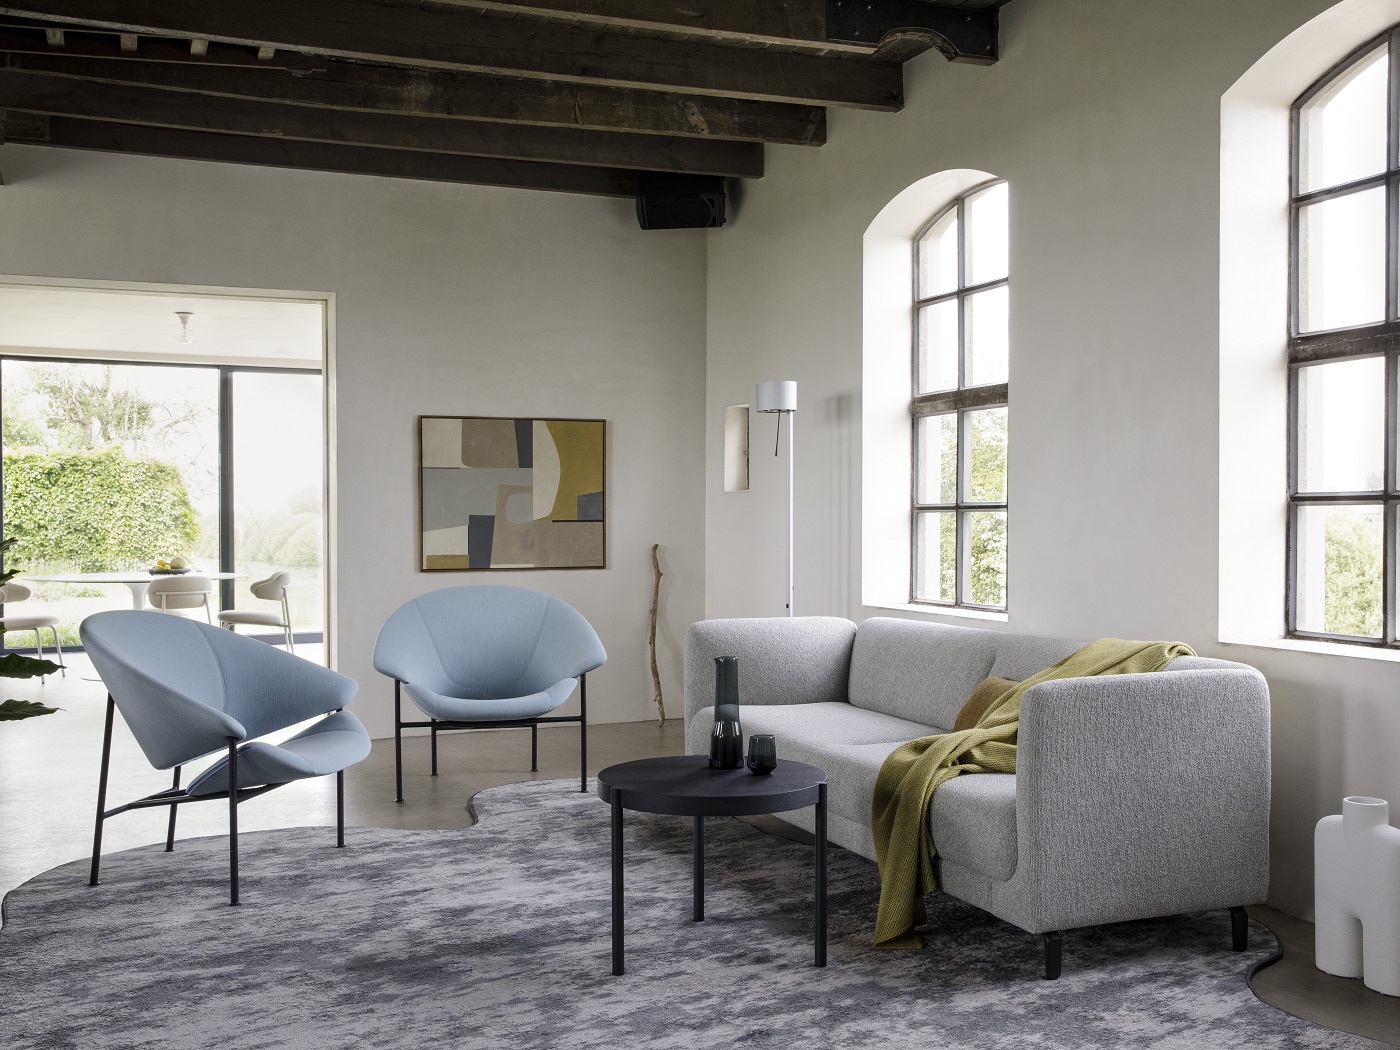 Luxe fauteuils van top design meubel merken Artifort, Bert Plantagie, Label en meer koop je bij Wiechers Wonen in Dwingeloo